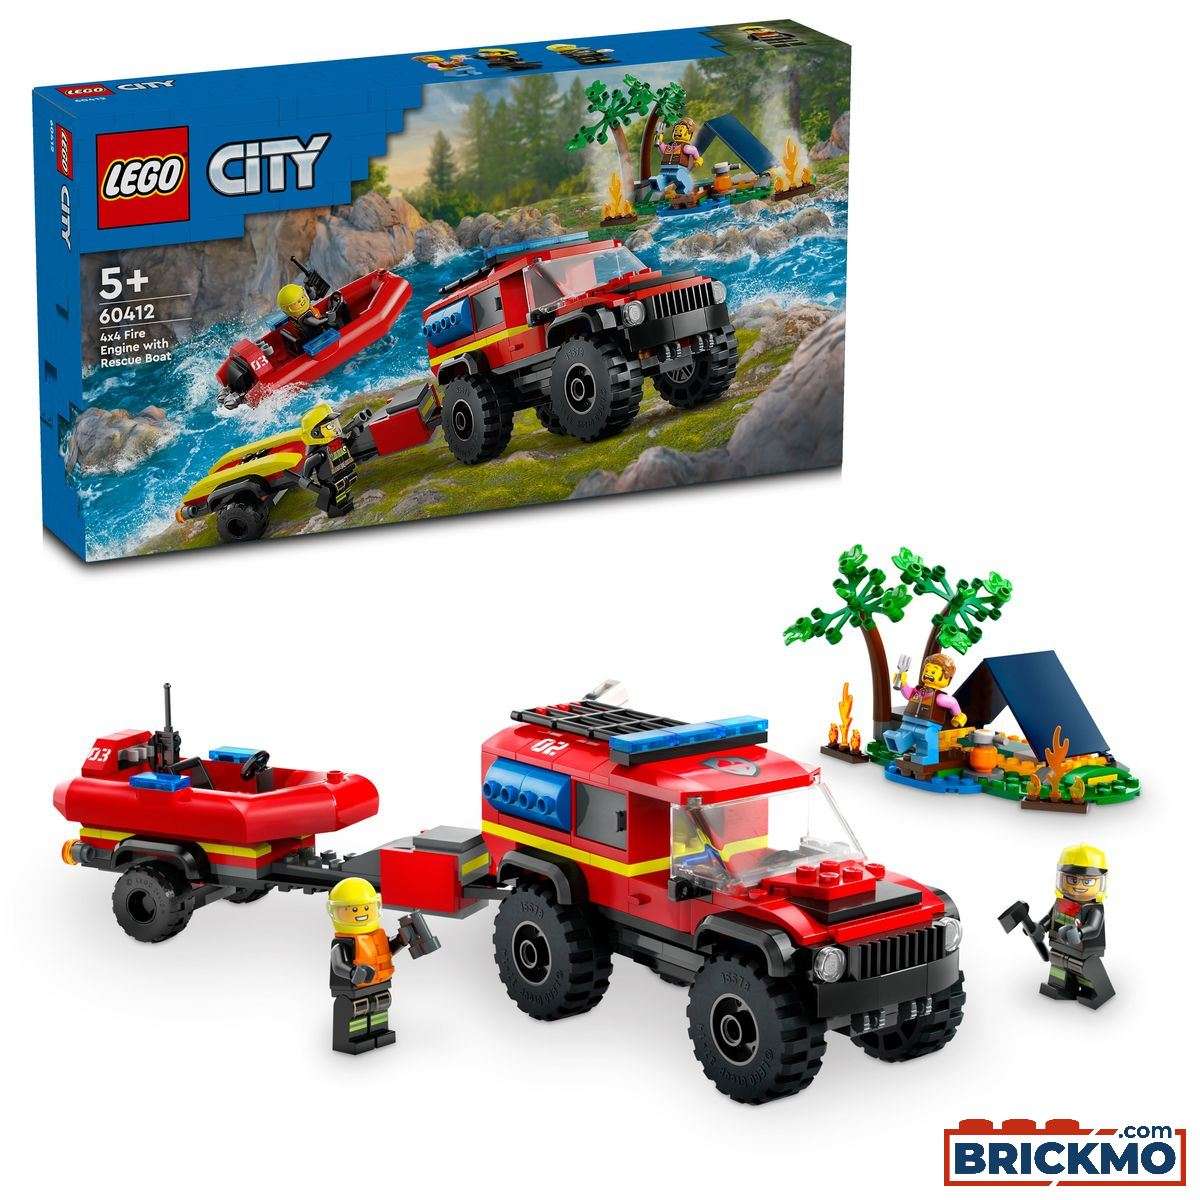 LEGO City 60412 Feuerwehrgeländewagen mit Rettungsboot 60412